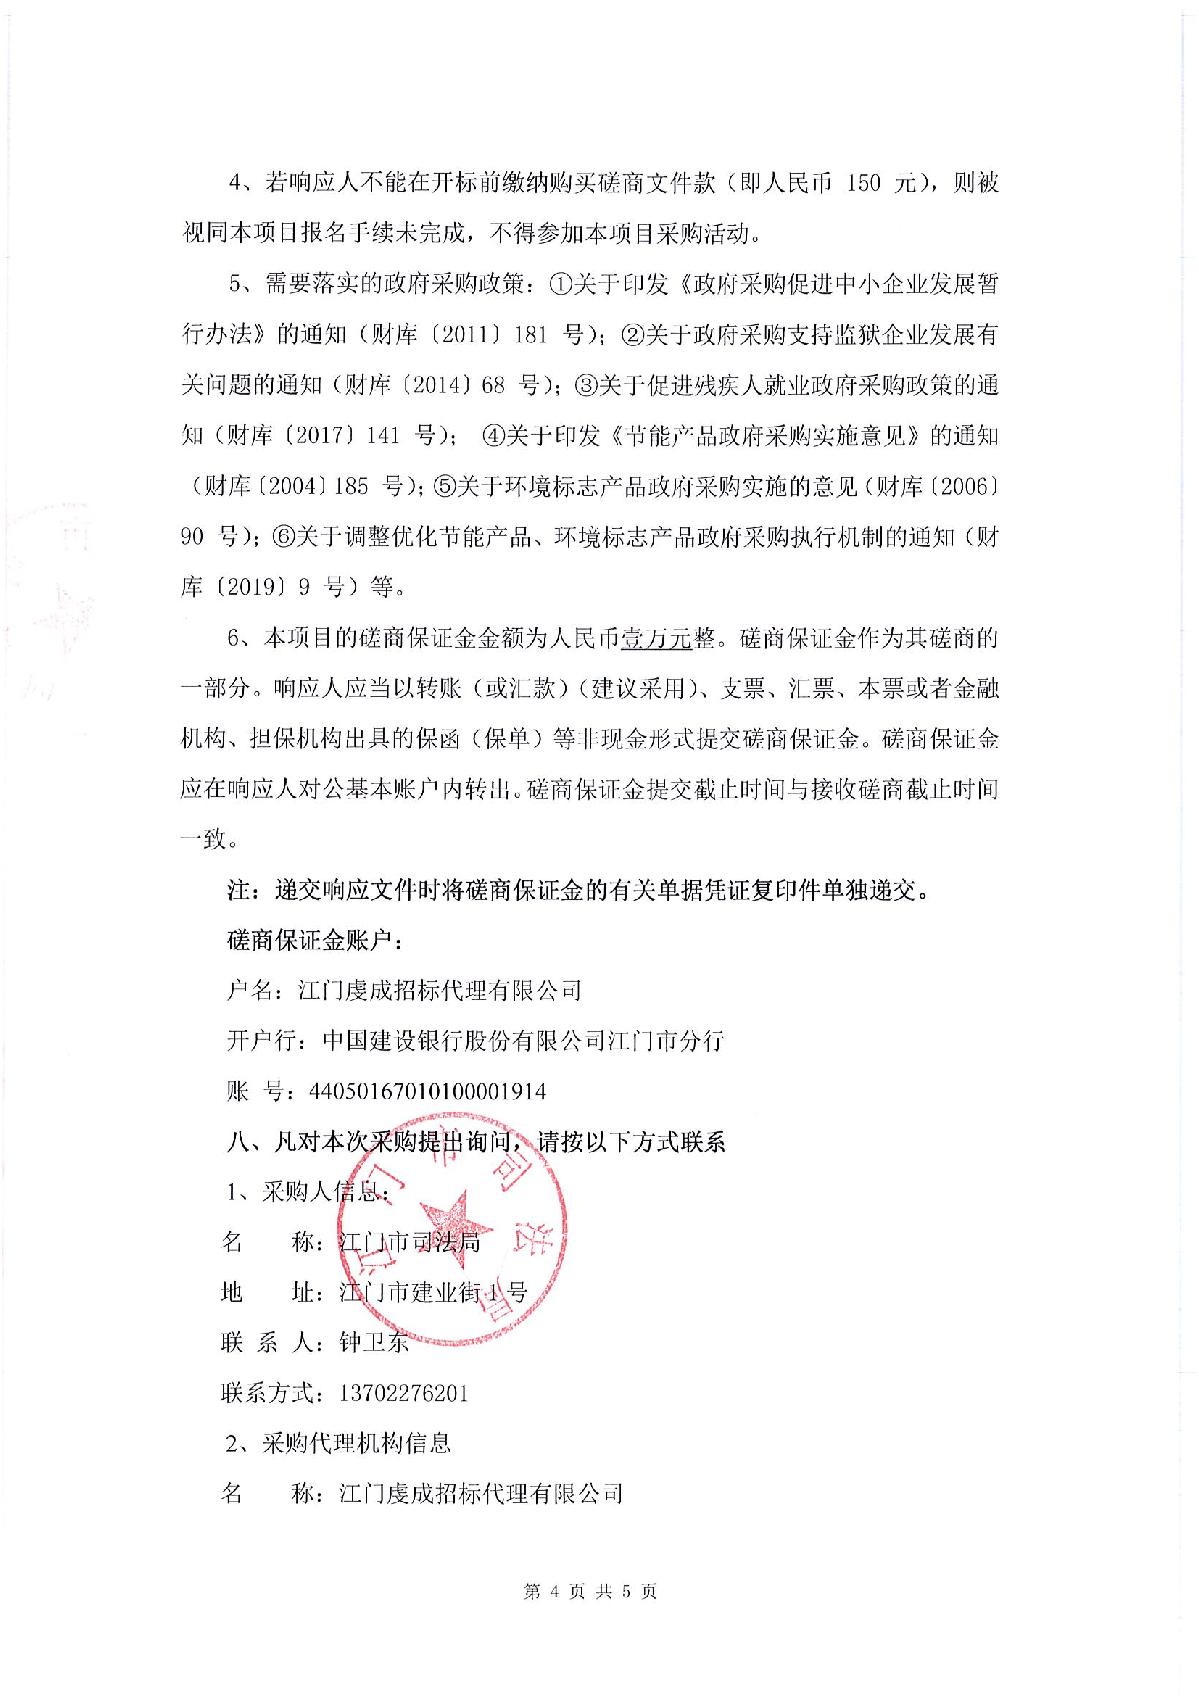 采购邀请函-江门市司法局食堂食材配送采购项目_4.JPG